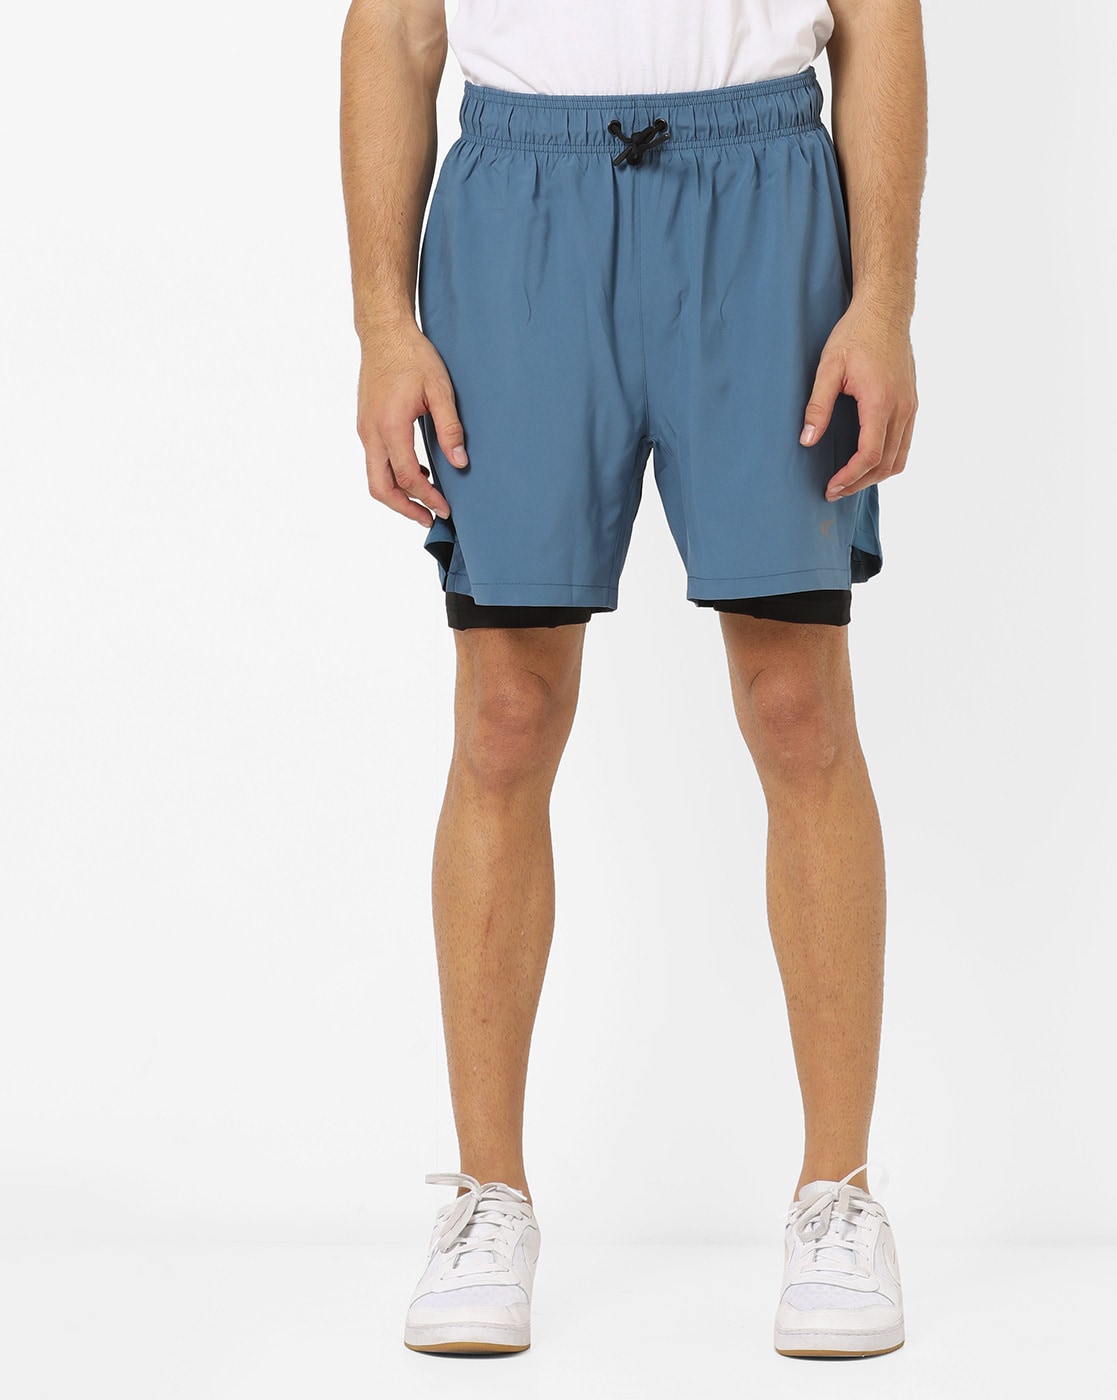 performax shorts